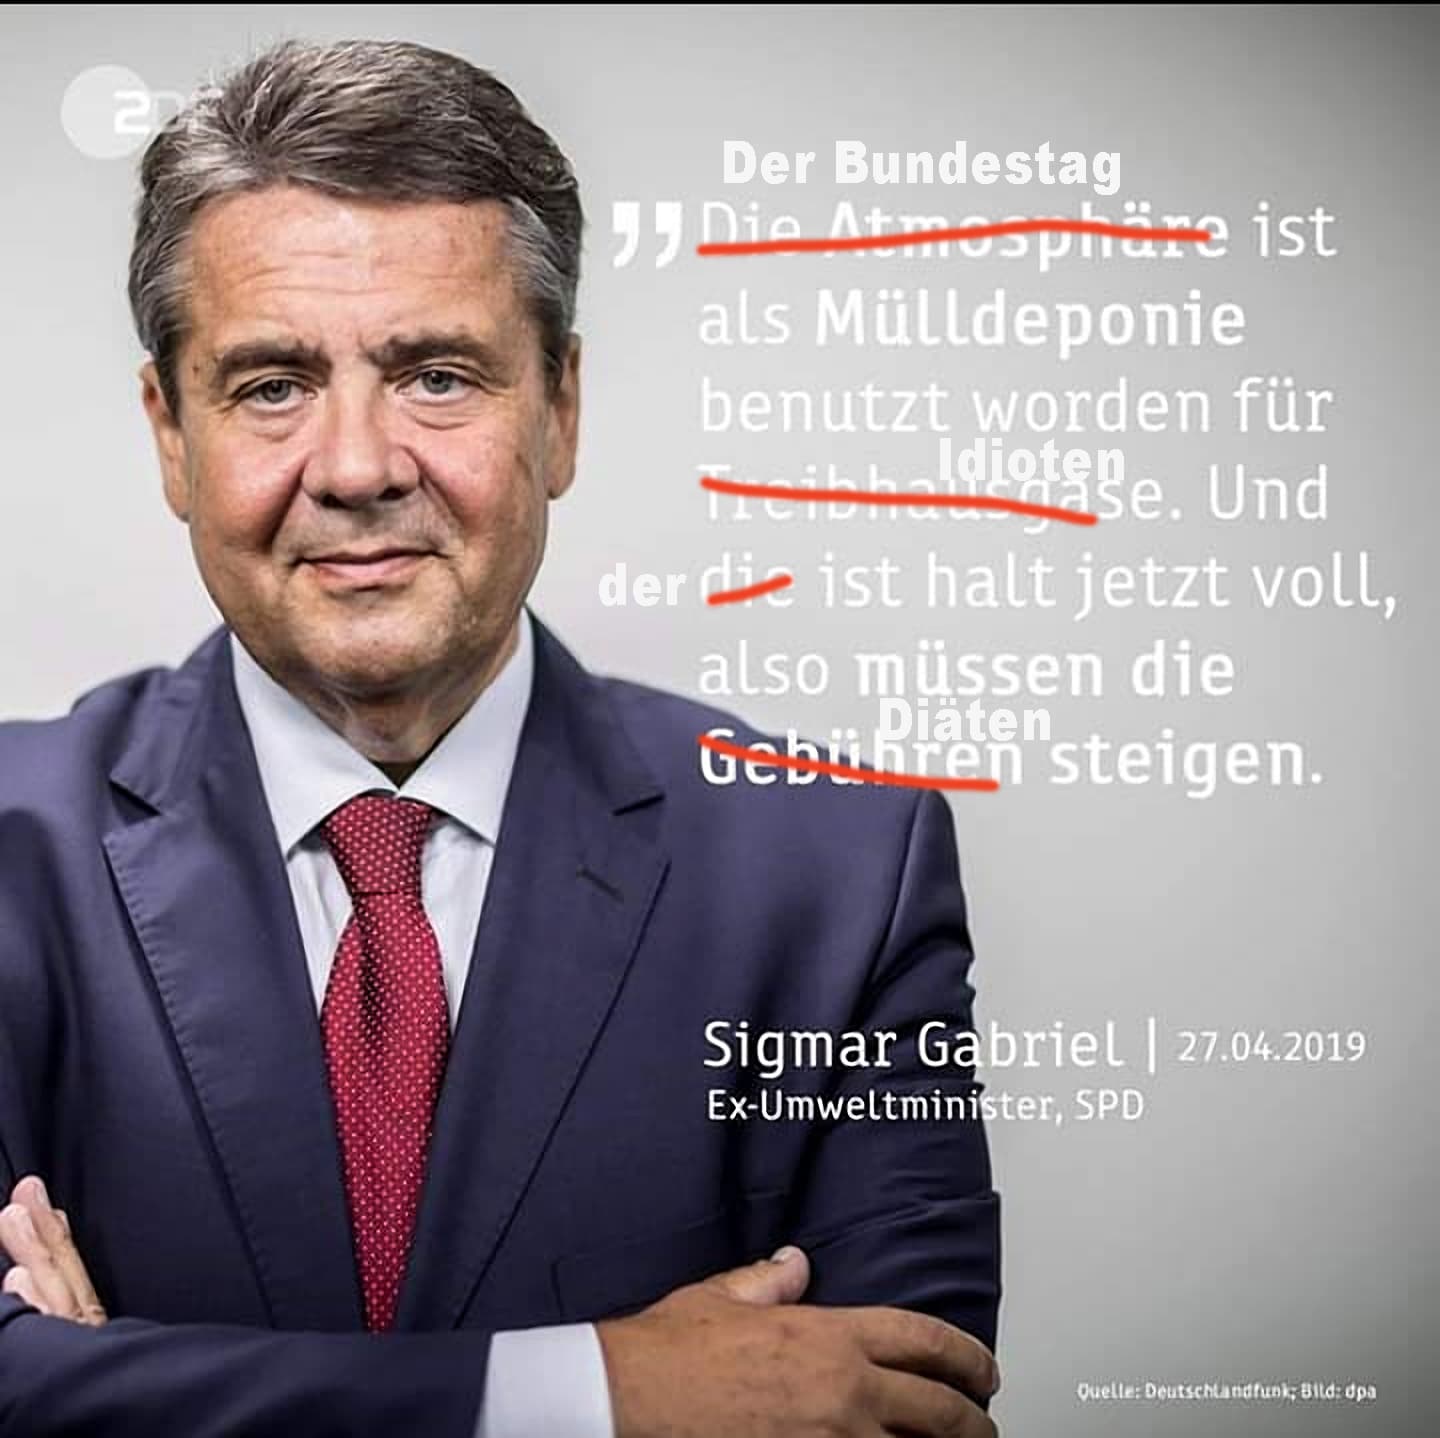 Siegmar Gabriel und ndie Umweltweisheiten zur Muelldeponie Bundestag